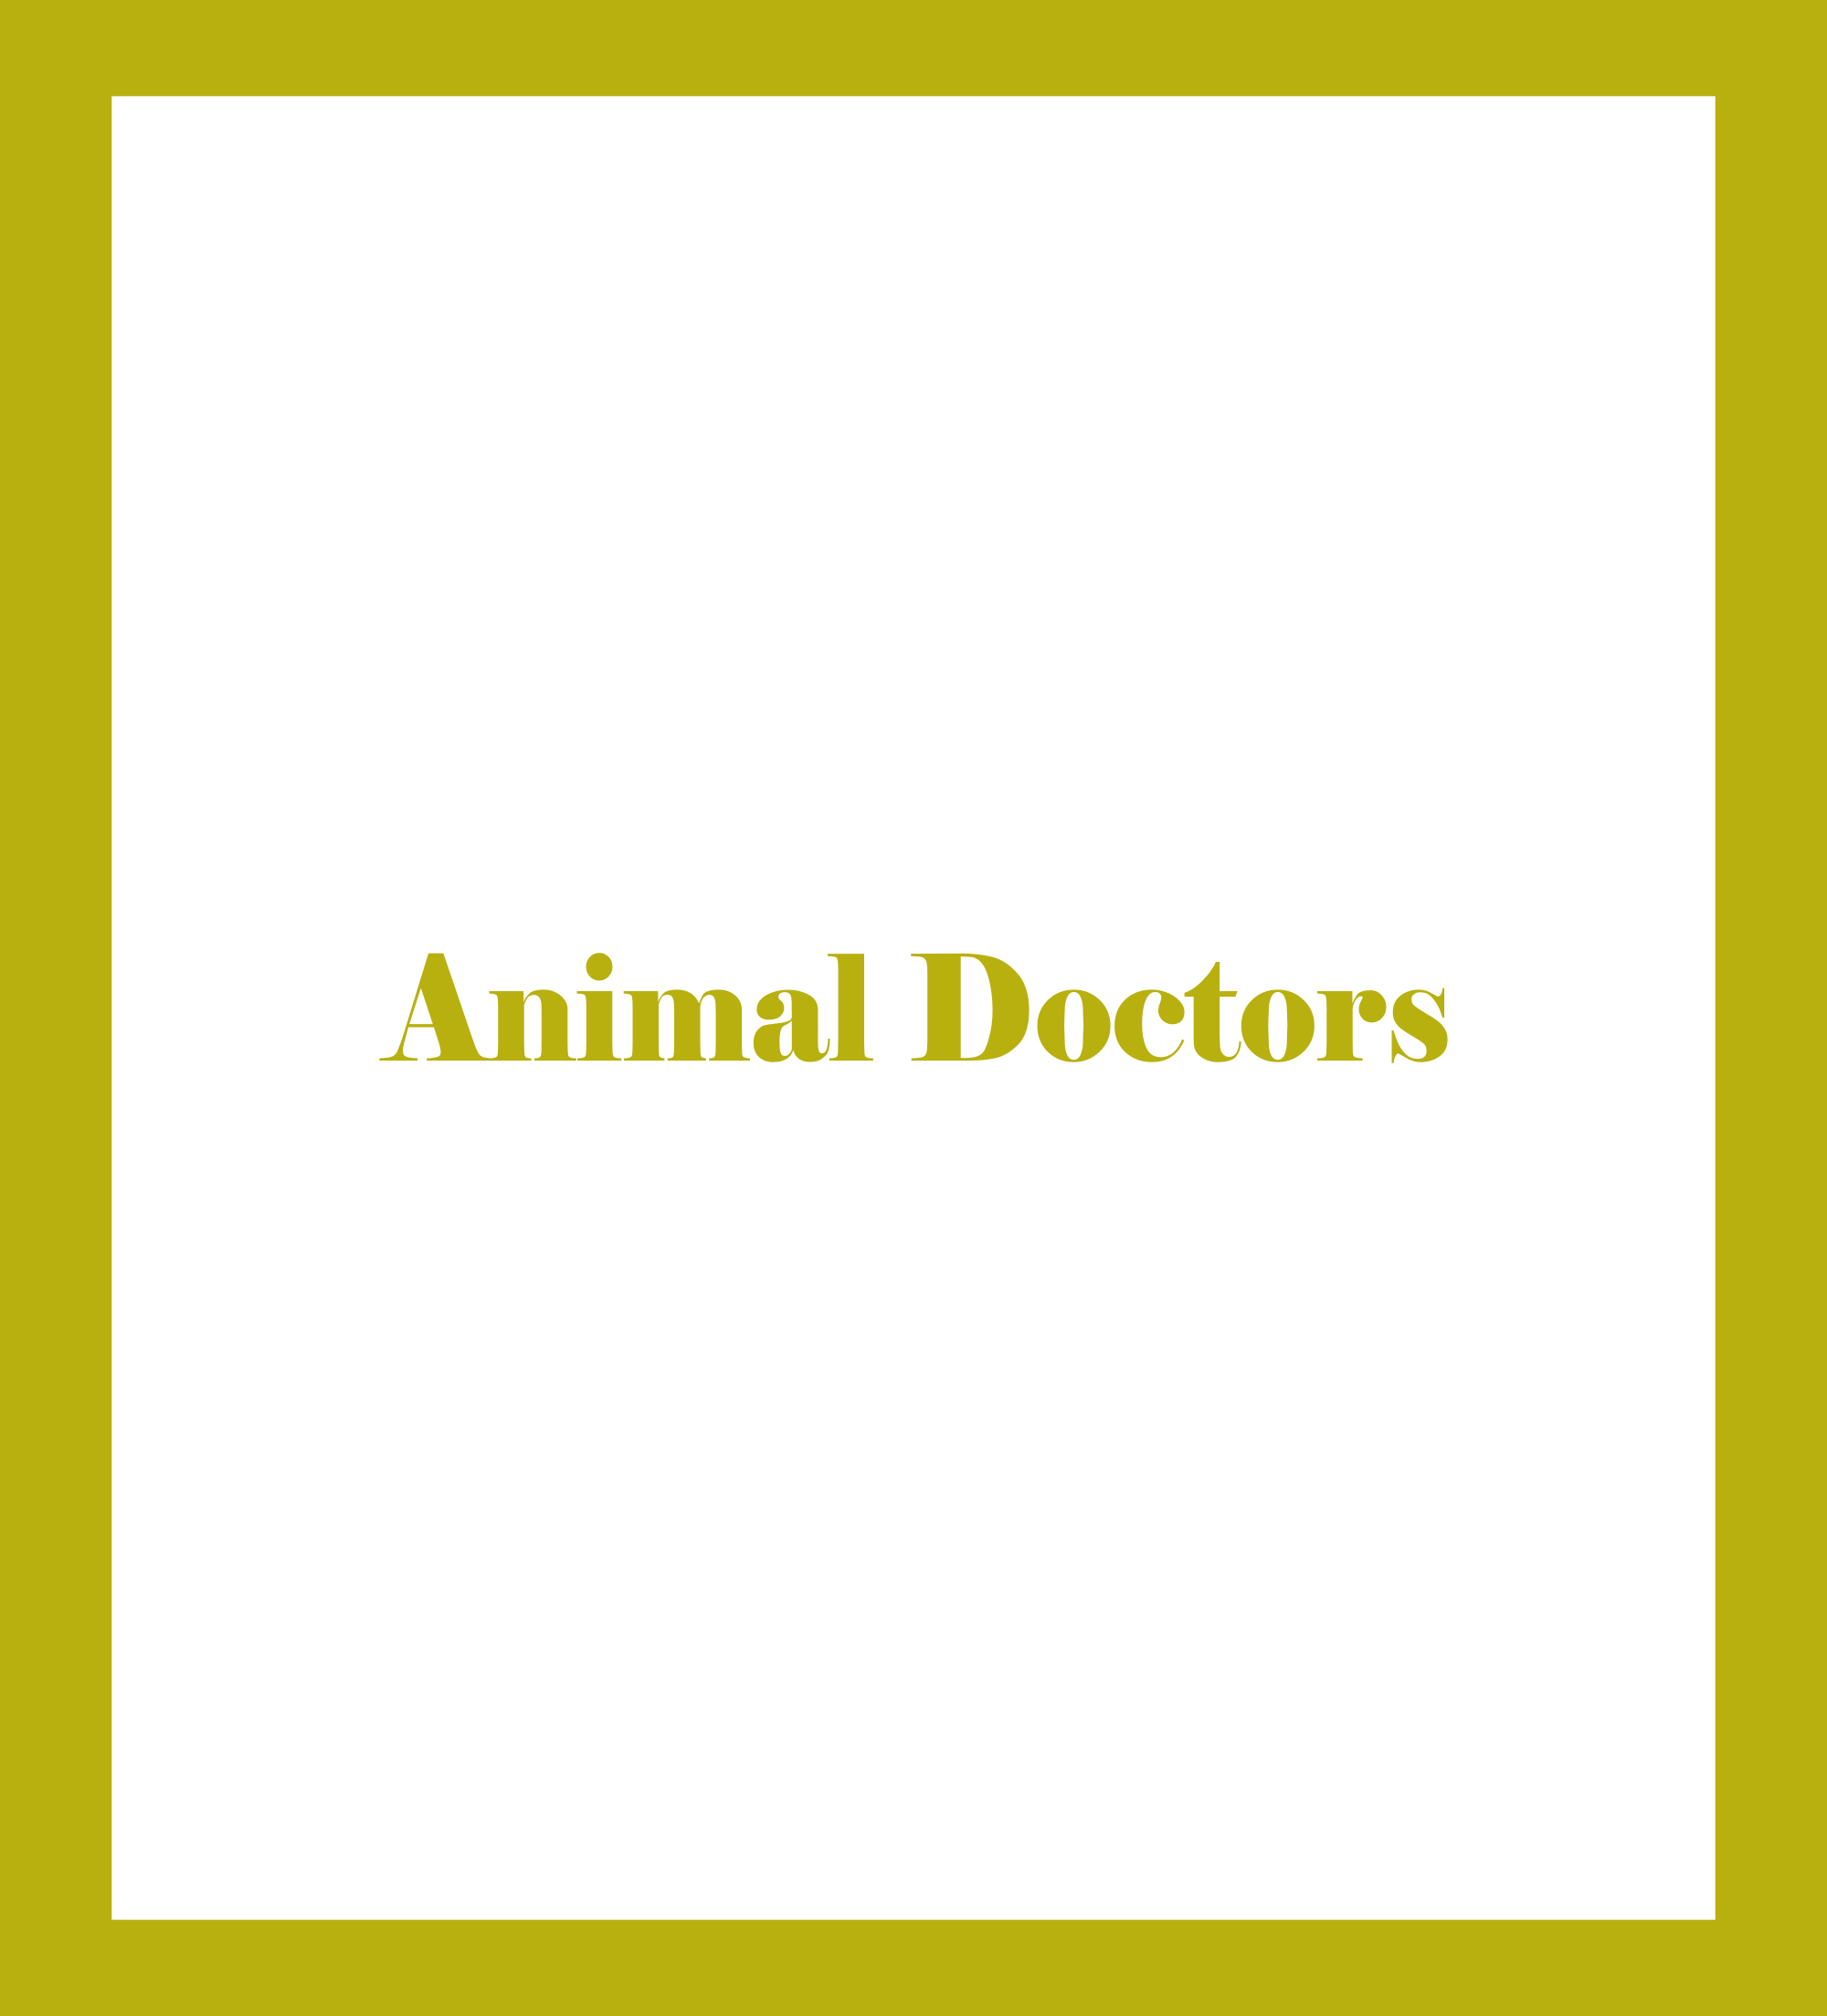 Animal Doctors